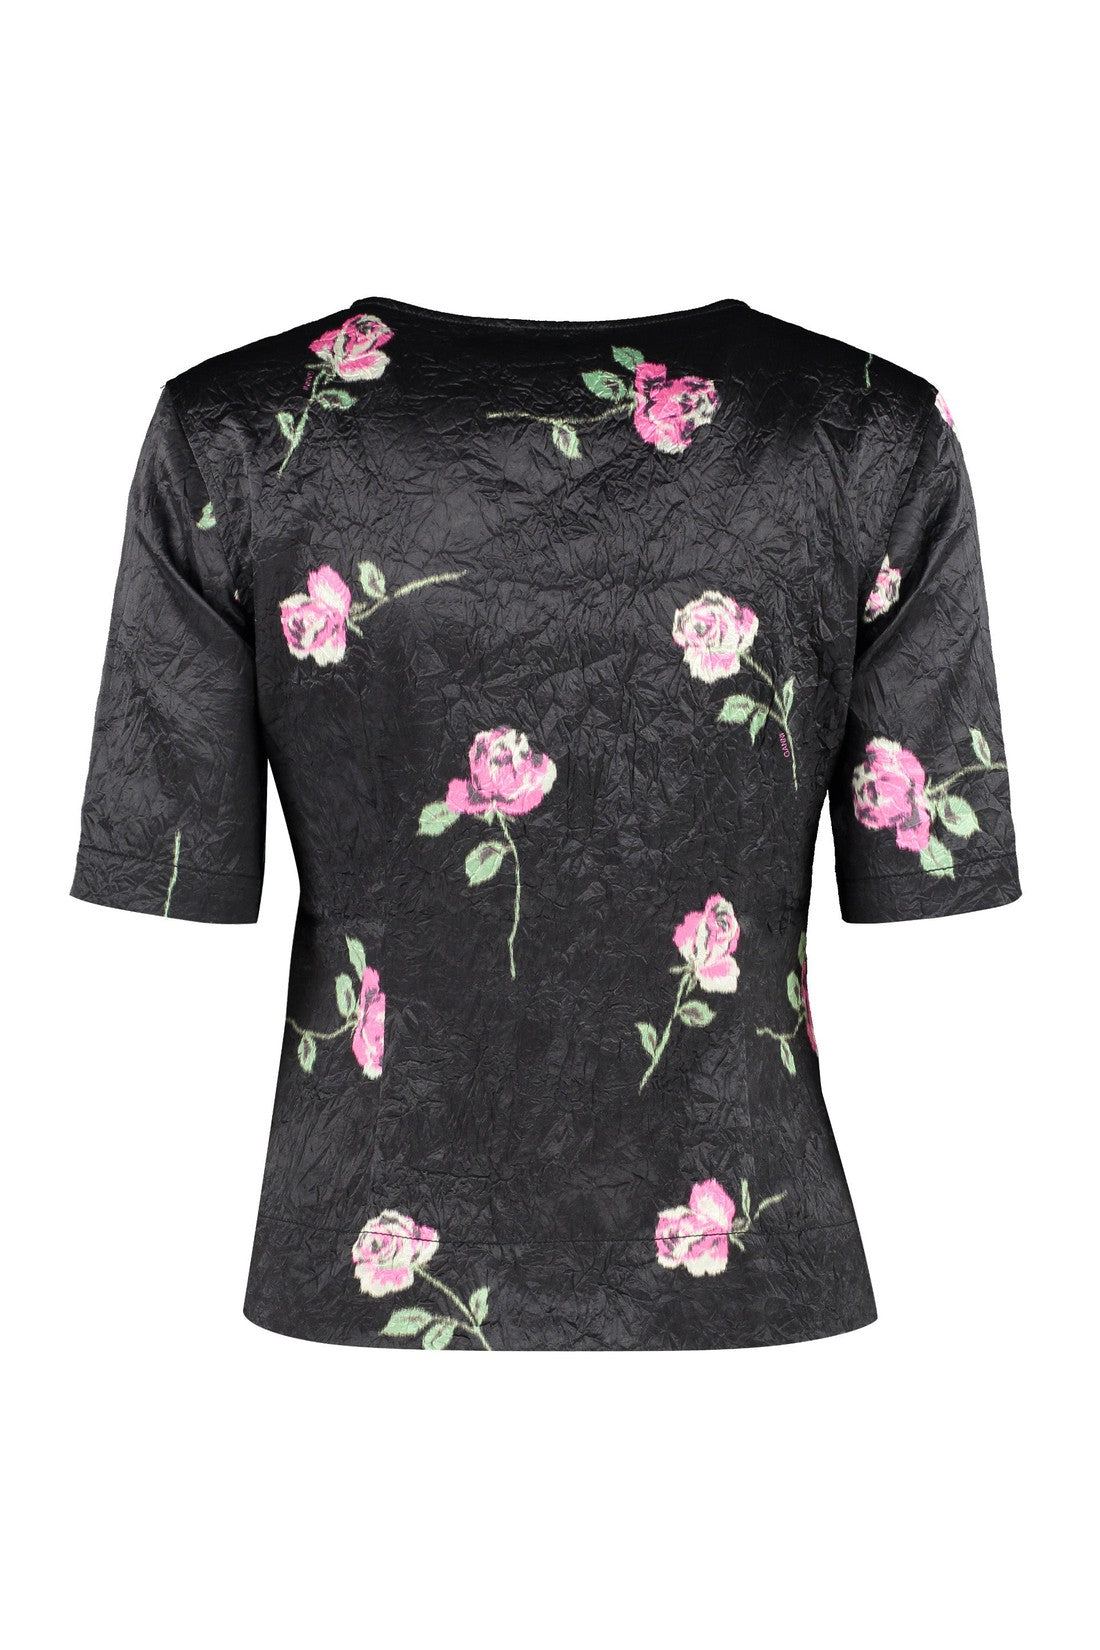 GANNI-OUTLET-SALE-Print blouse-ARCHIVIST